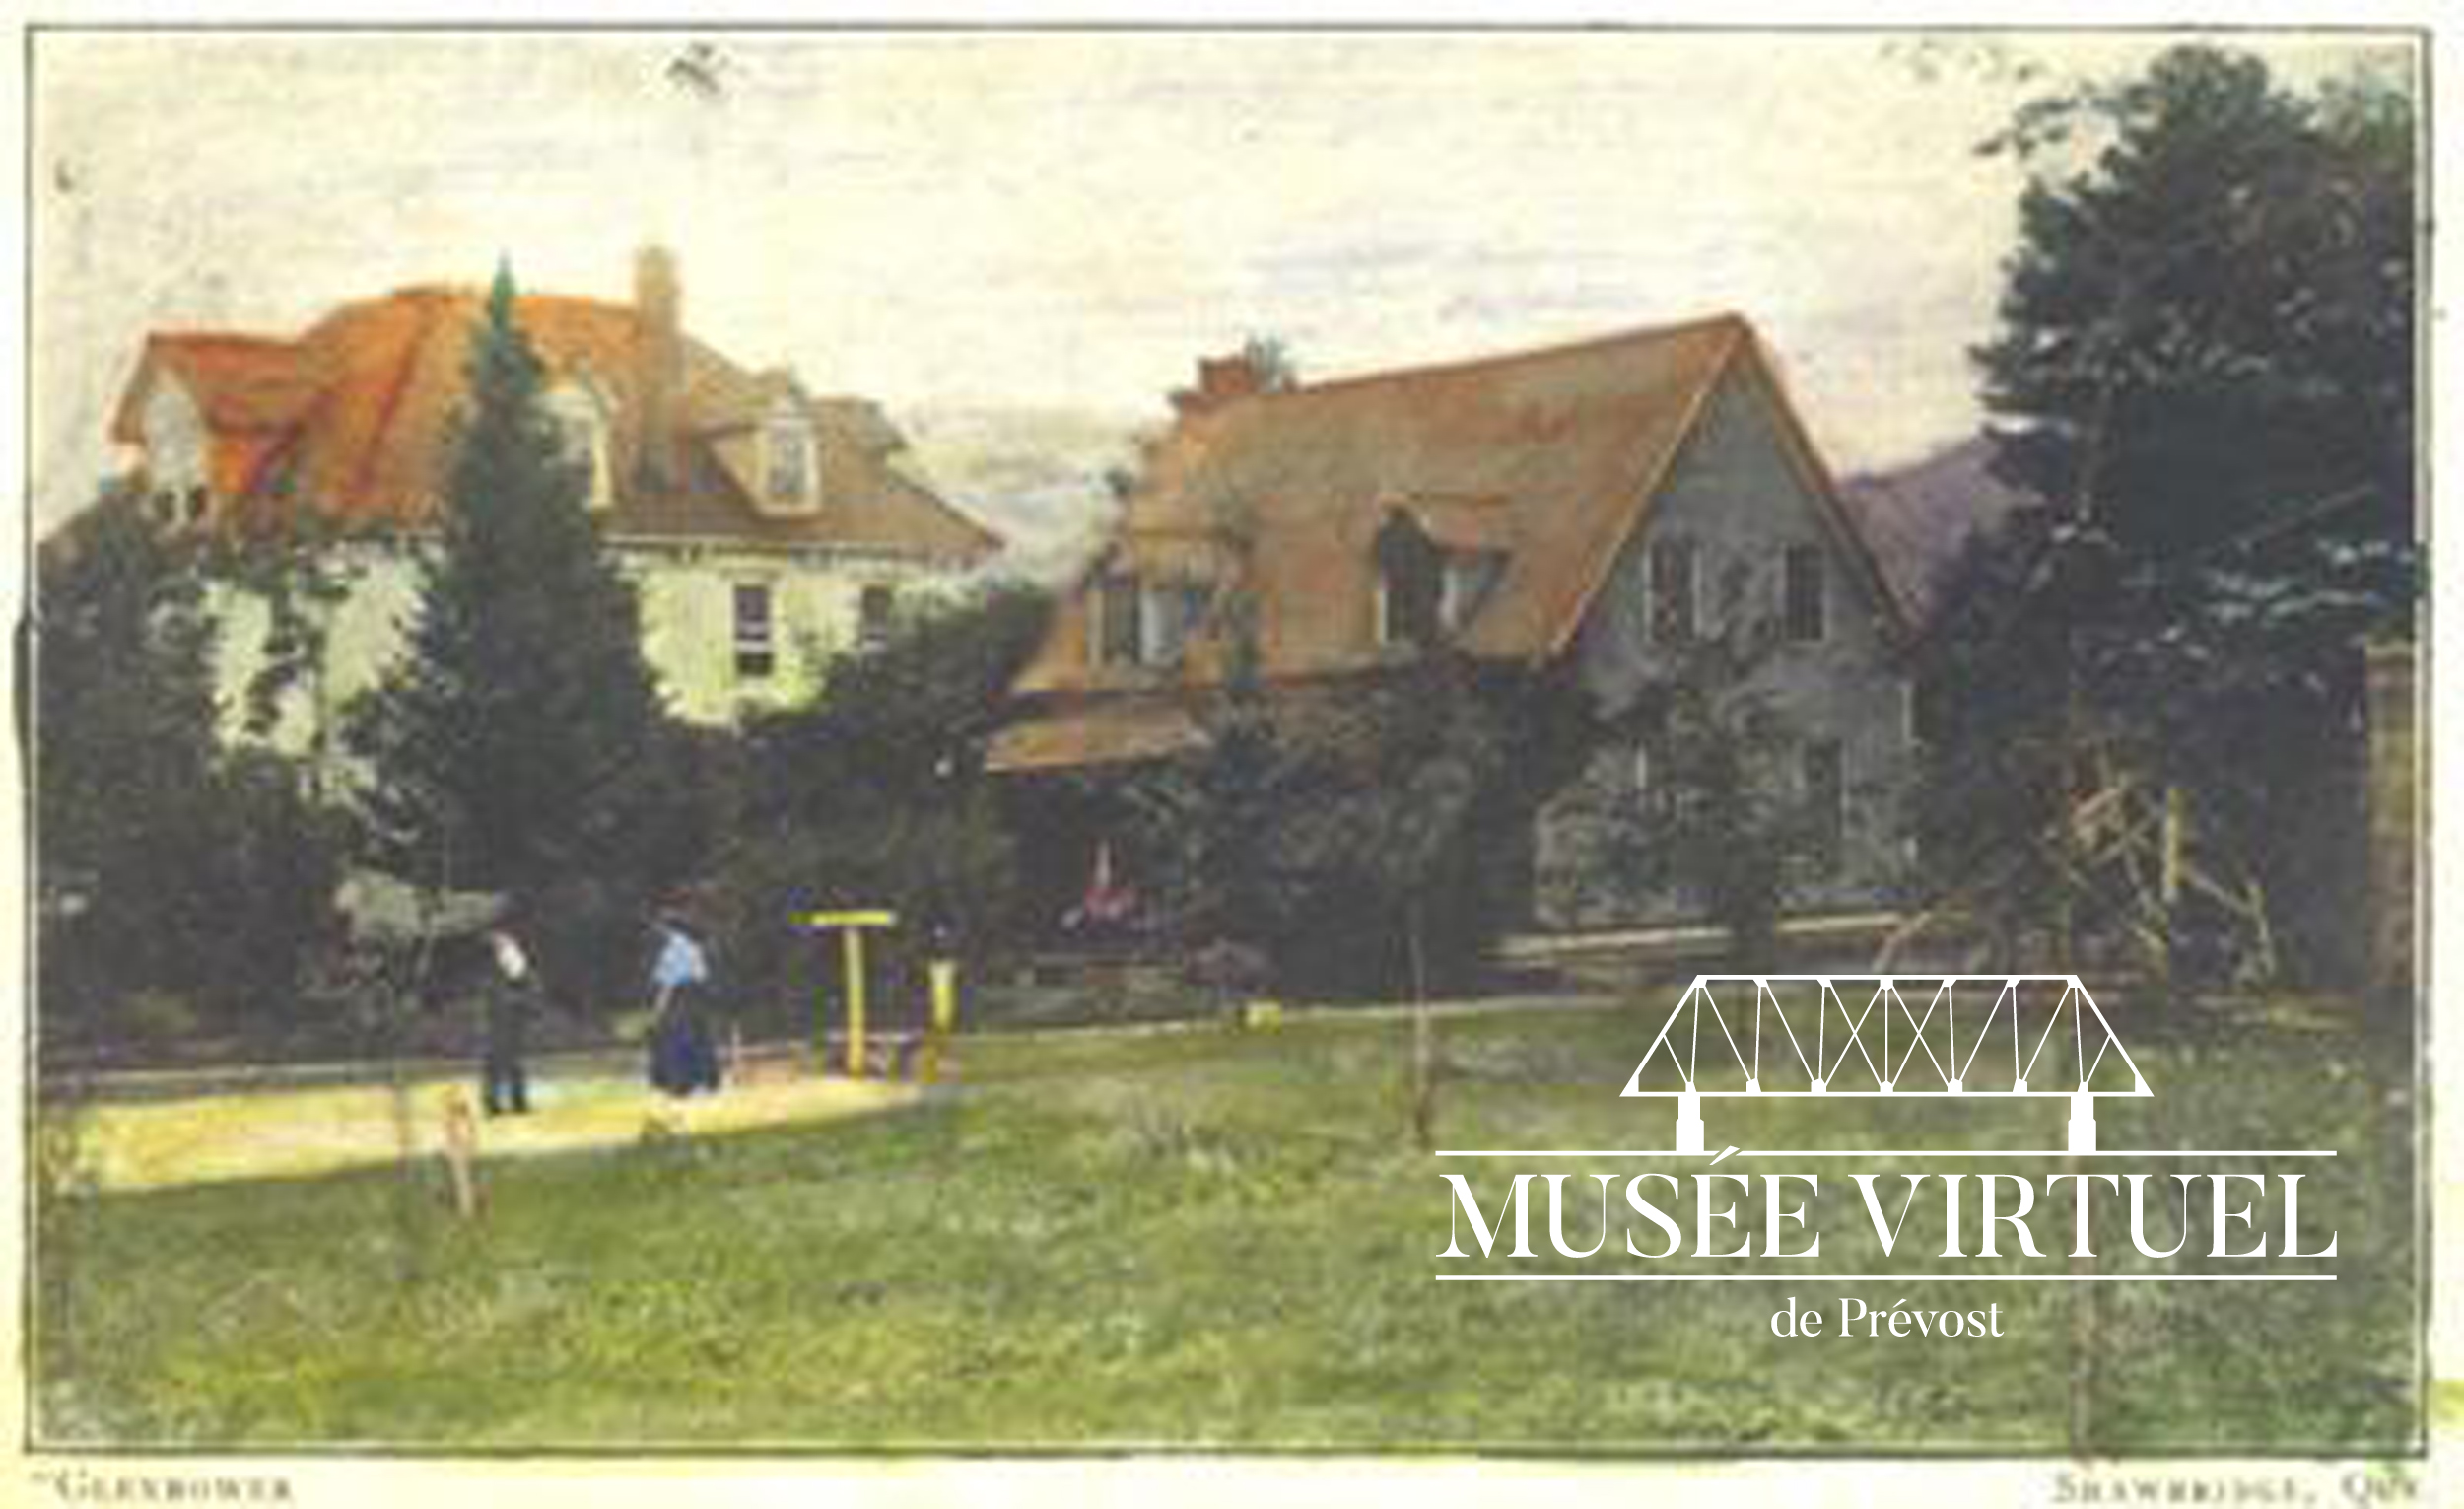 1. Maison Glenbower avant 1911 - Collection de la gare de Prévost